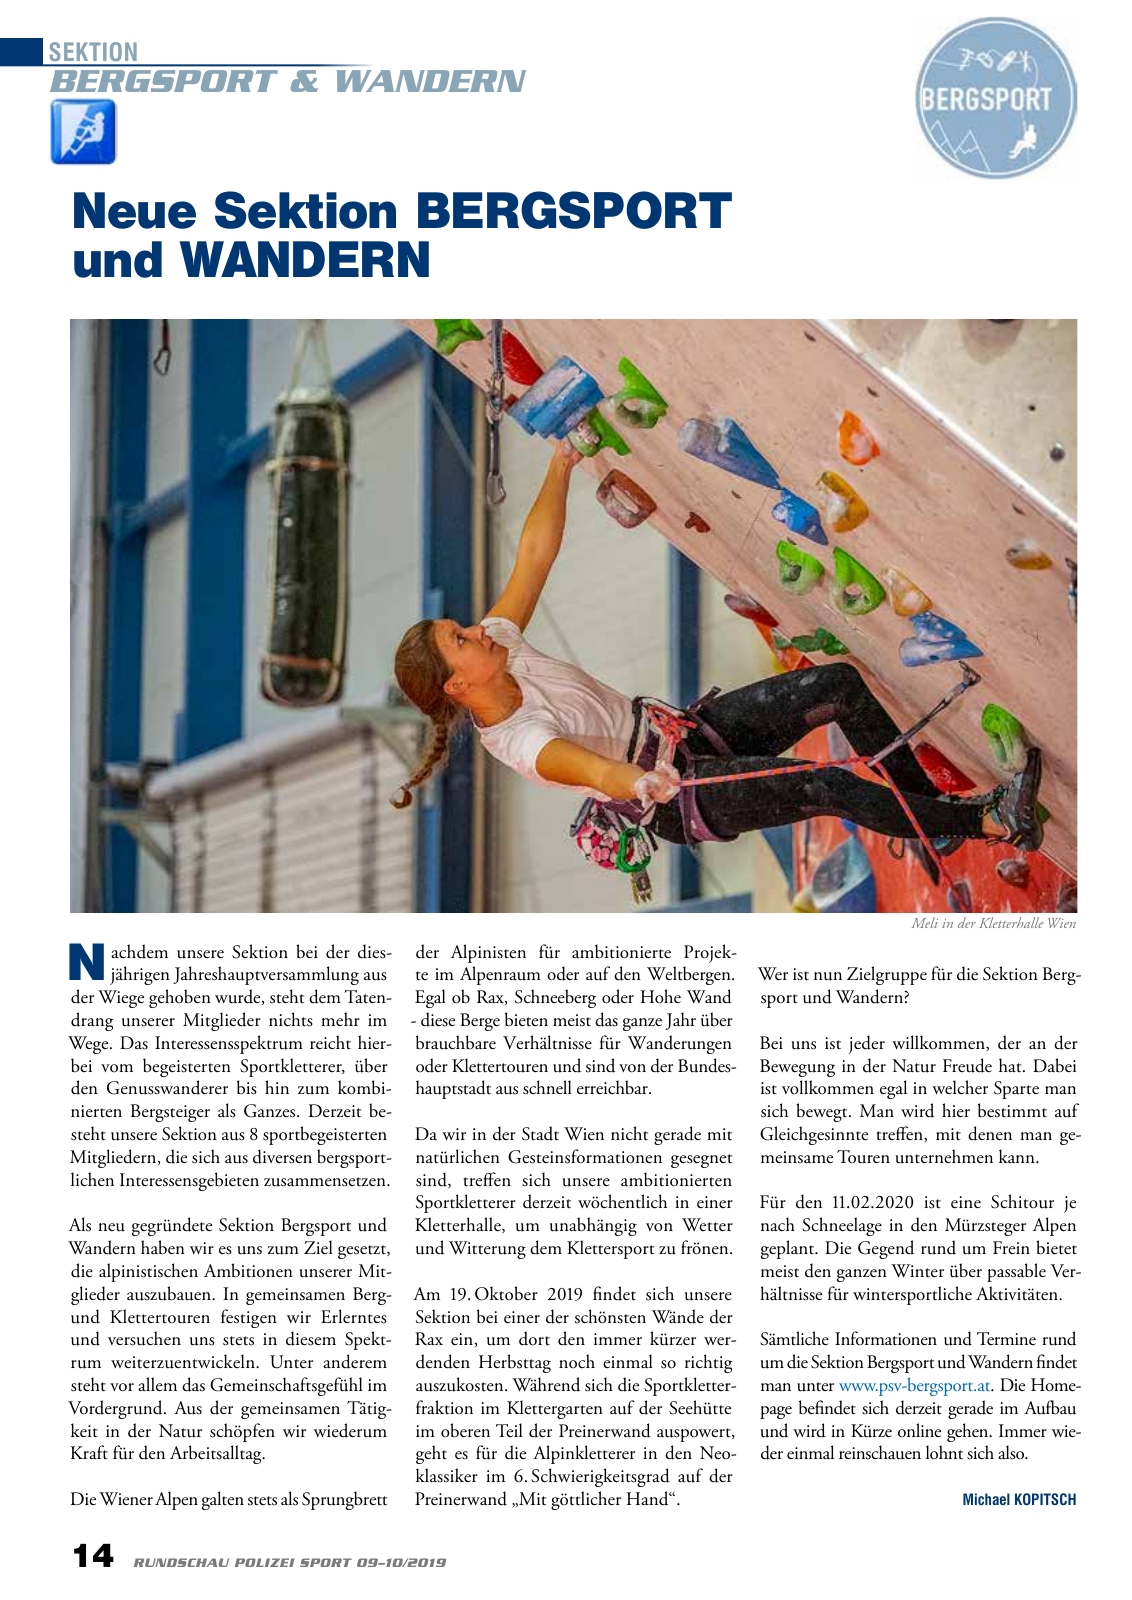 Vorschau Rundschau Polizei Sport 09-10/2019 Seite 14